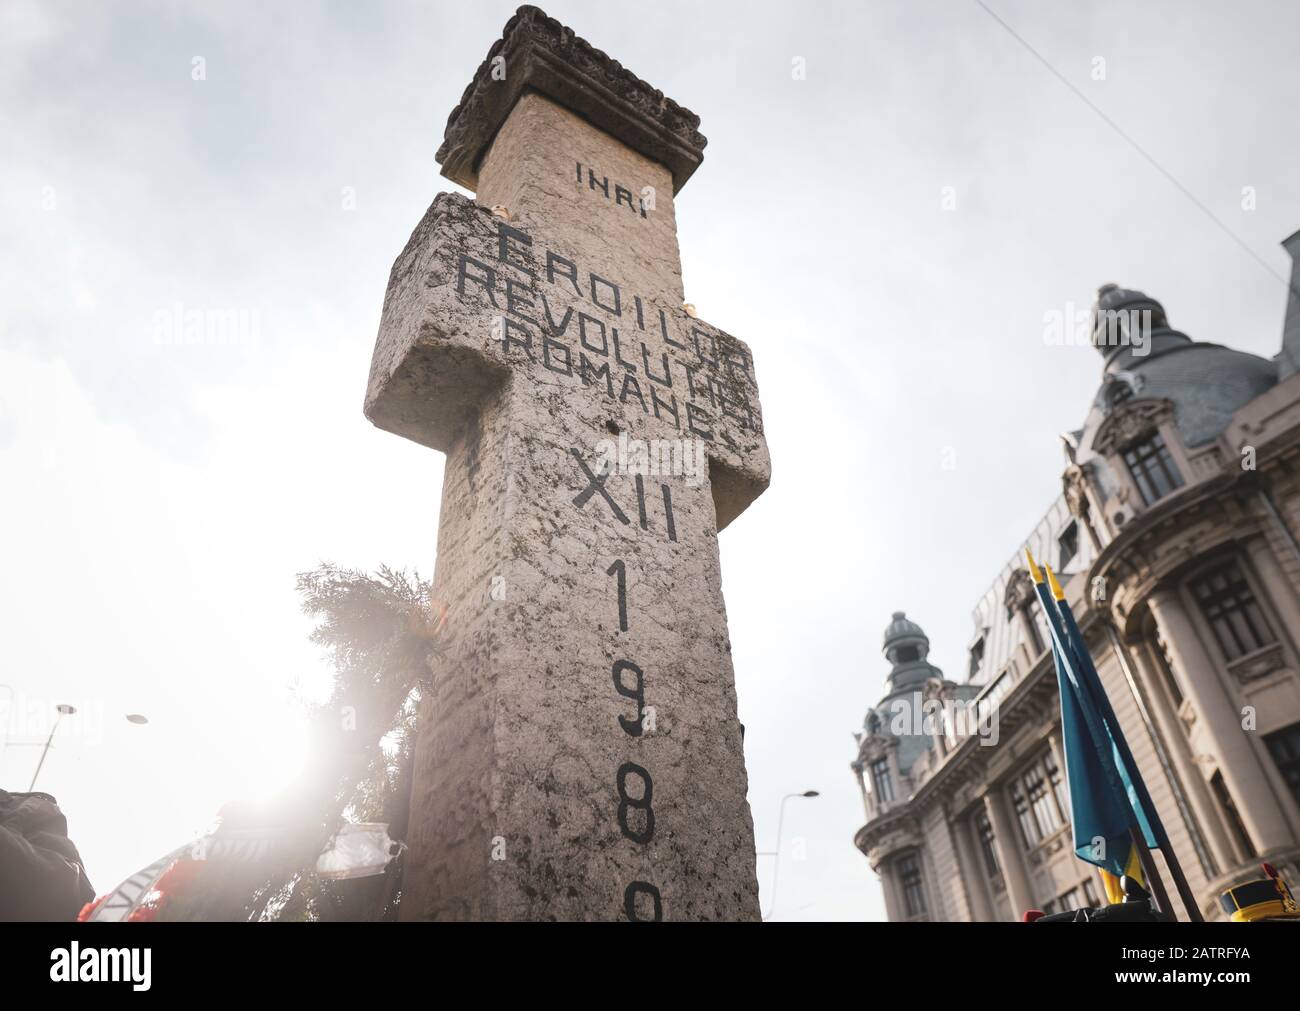 Bukarest, Rumänien - 21. Dezember 2019: Hochschulplatz (rumänisch: Piaţa Universităţii) oder 21. Dezember 1989 Platz, zu Ehren derer, die Durin starben Stockfoto